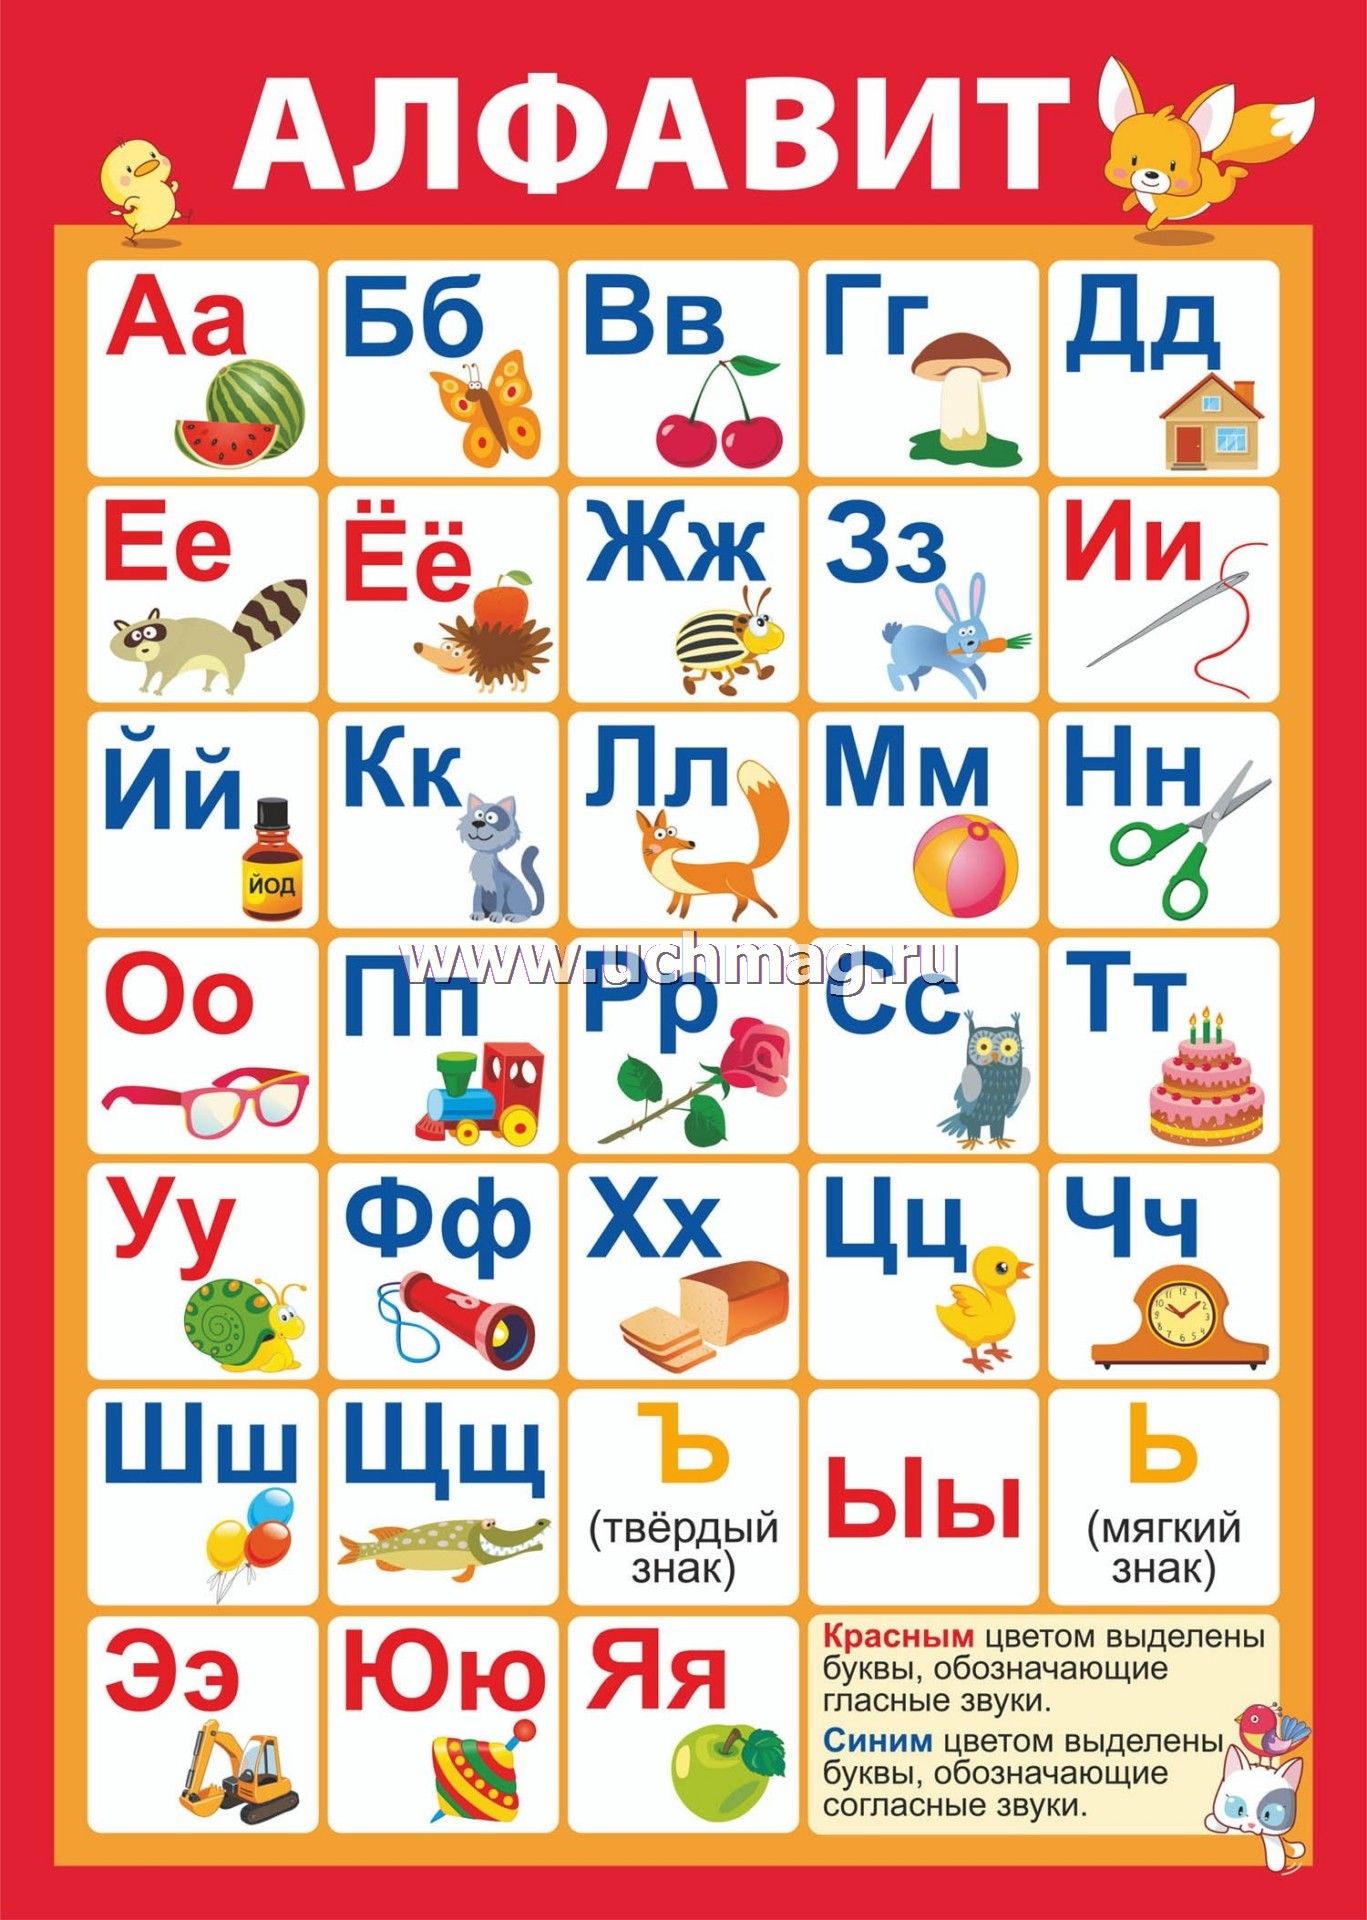 Азбука готов 4. Плакат с буквами для детей. Алфавит со звуками. Русский алфавит. Звуки и буквы плакат для детей.